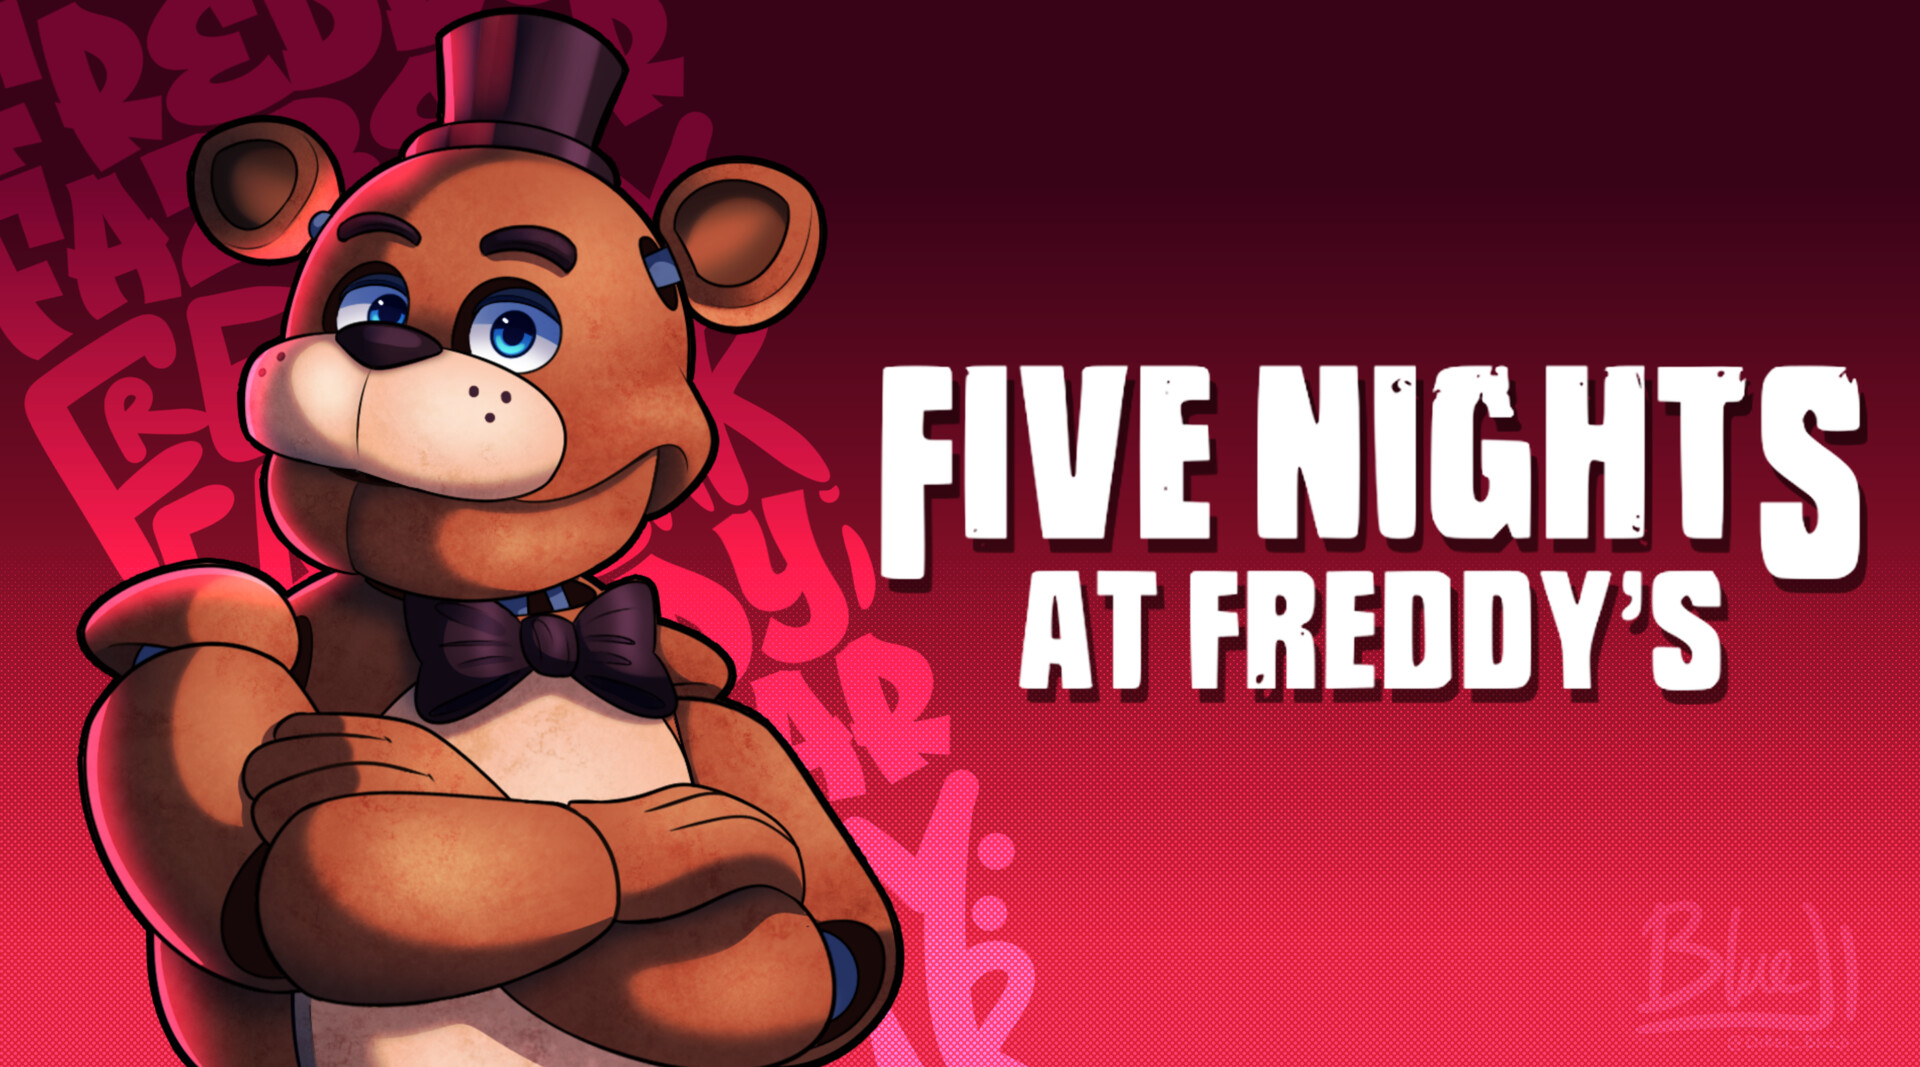 ArtStation - Freddy Fazbear, Five Nights at Freddy's Fanart